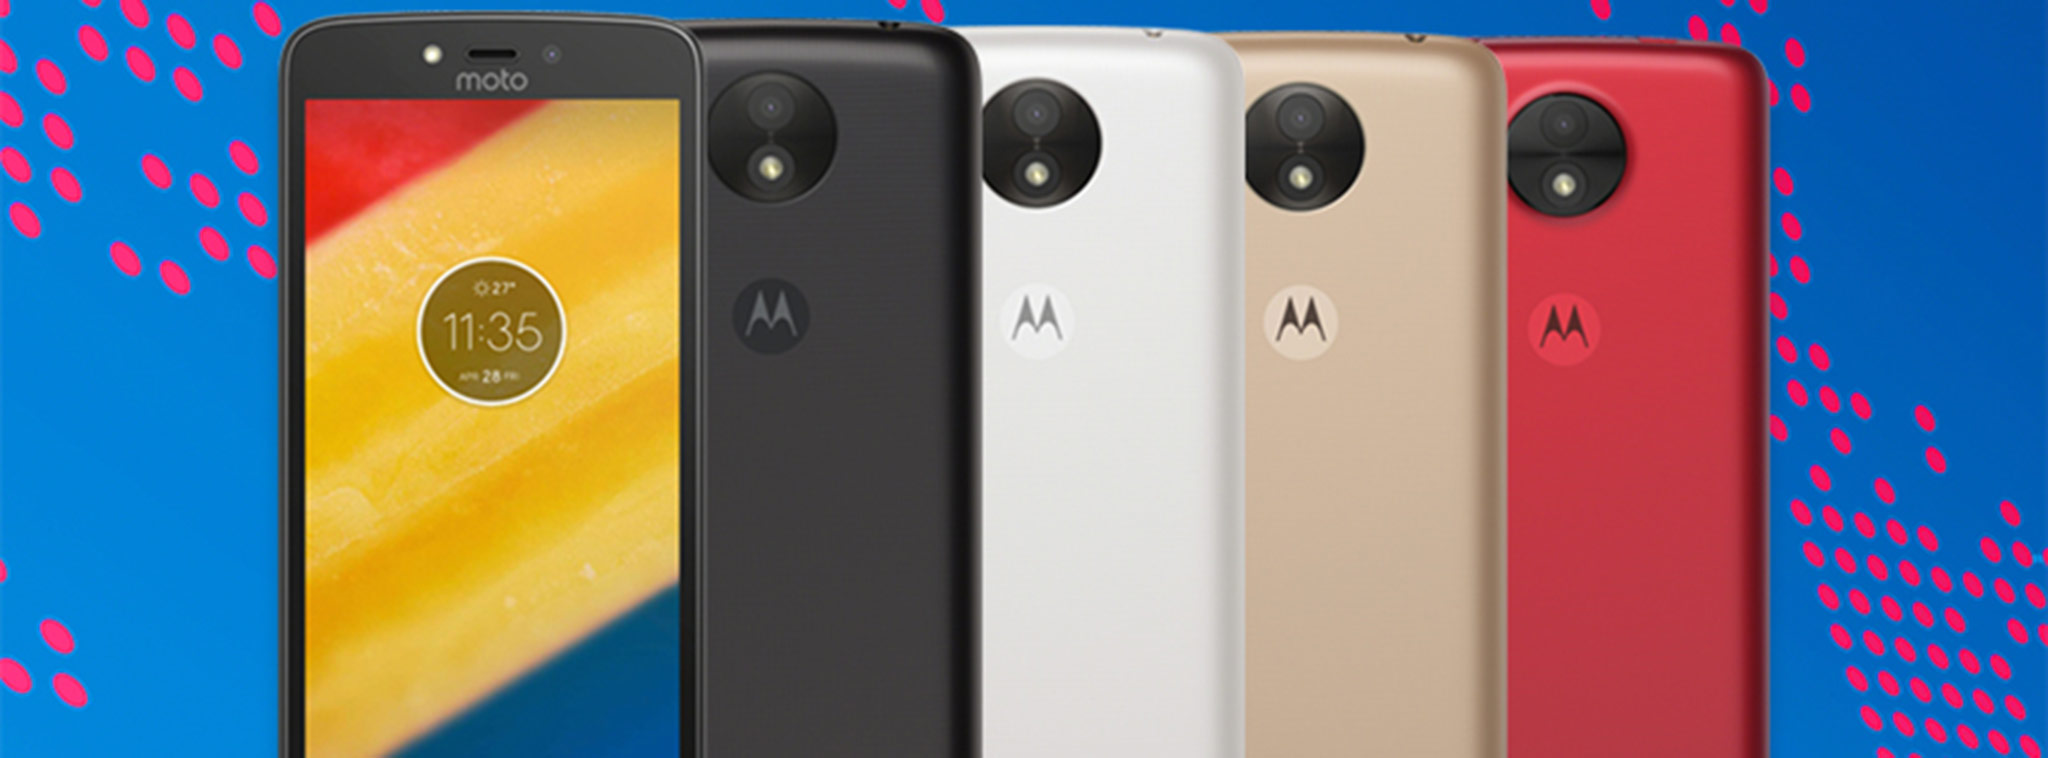 Motorola ra mắt Moto C và Moto C Plus: smartphone giá từ $98, màn hình 5-inch, hỗ trợ 4G